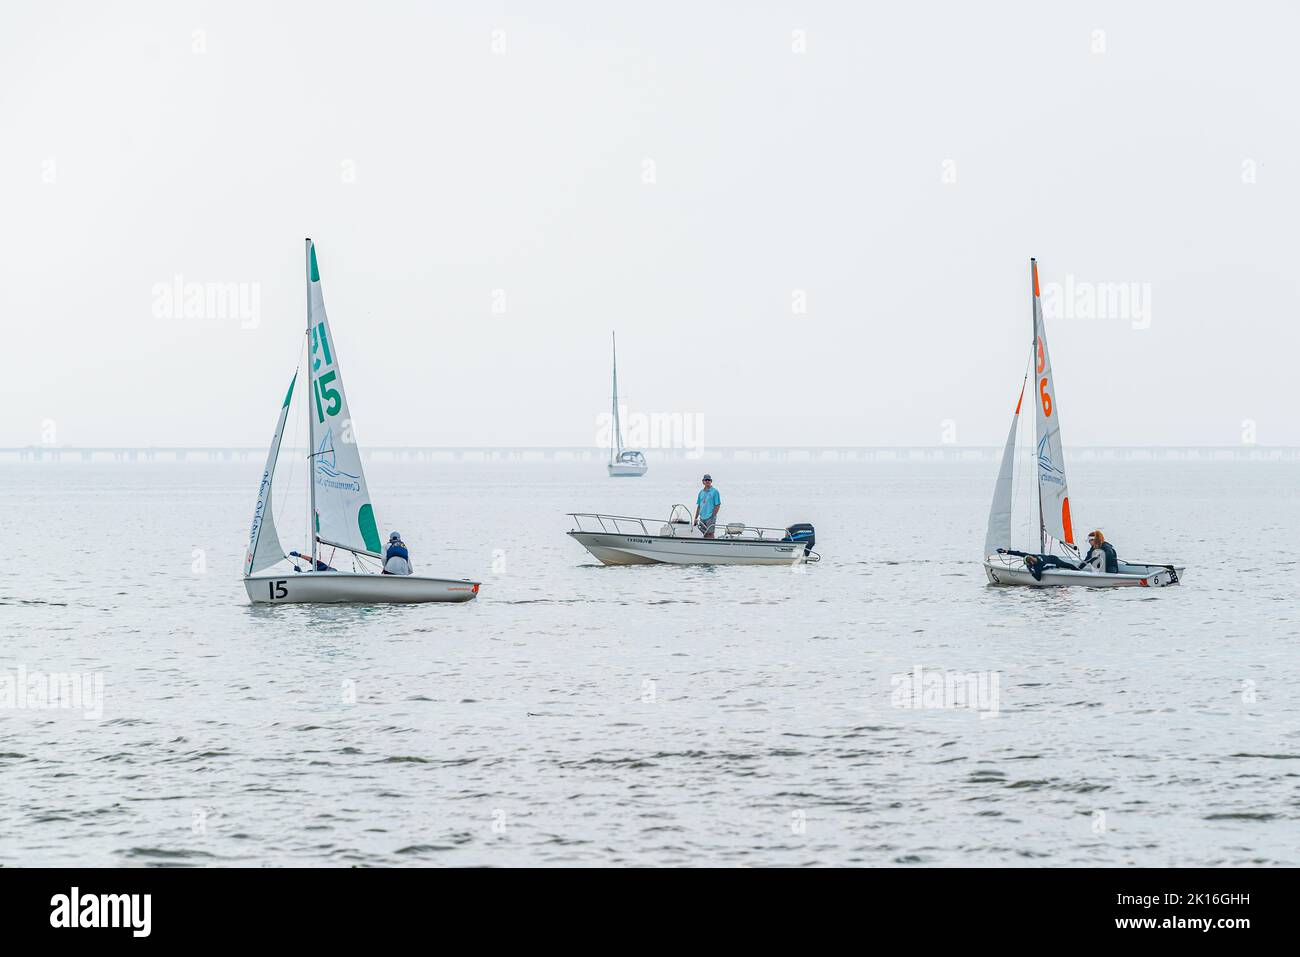 LA NOUVELLE-ORLÉANS, LA, États-Unis - 16 FÉVRIER 2019 : régate de petit voilier sur le lac Pontchartrain avec deux bateaux concurrents, un moniteur et du brouillard en arrière-plan Banque D'Images